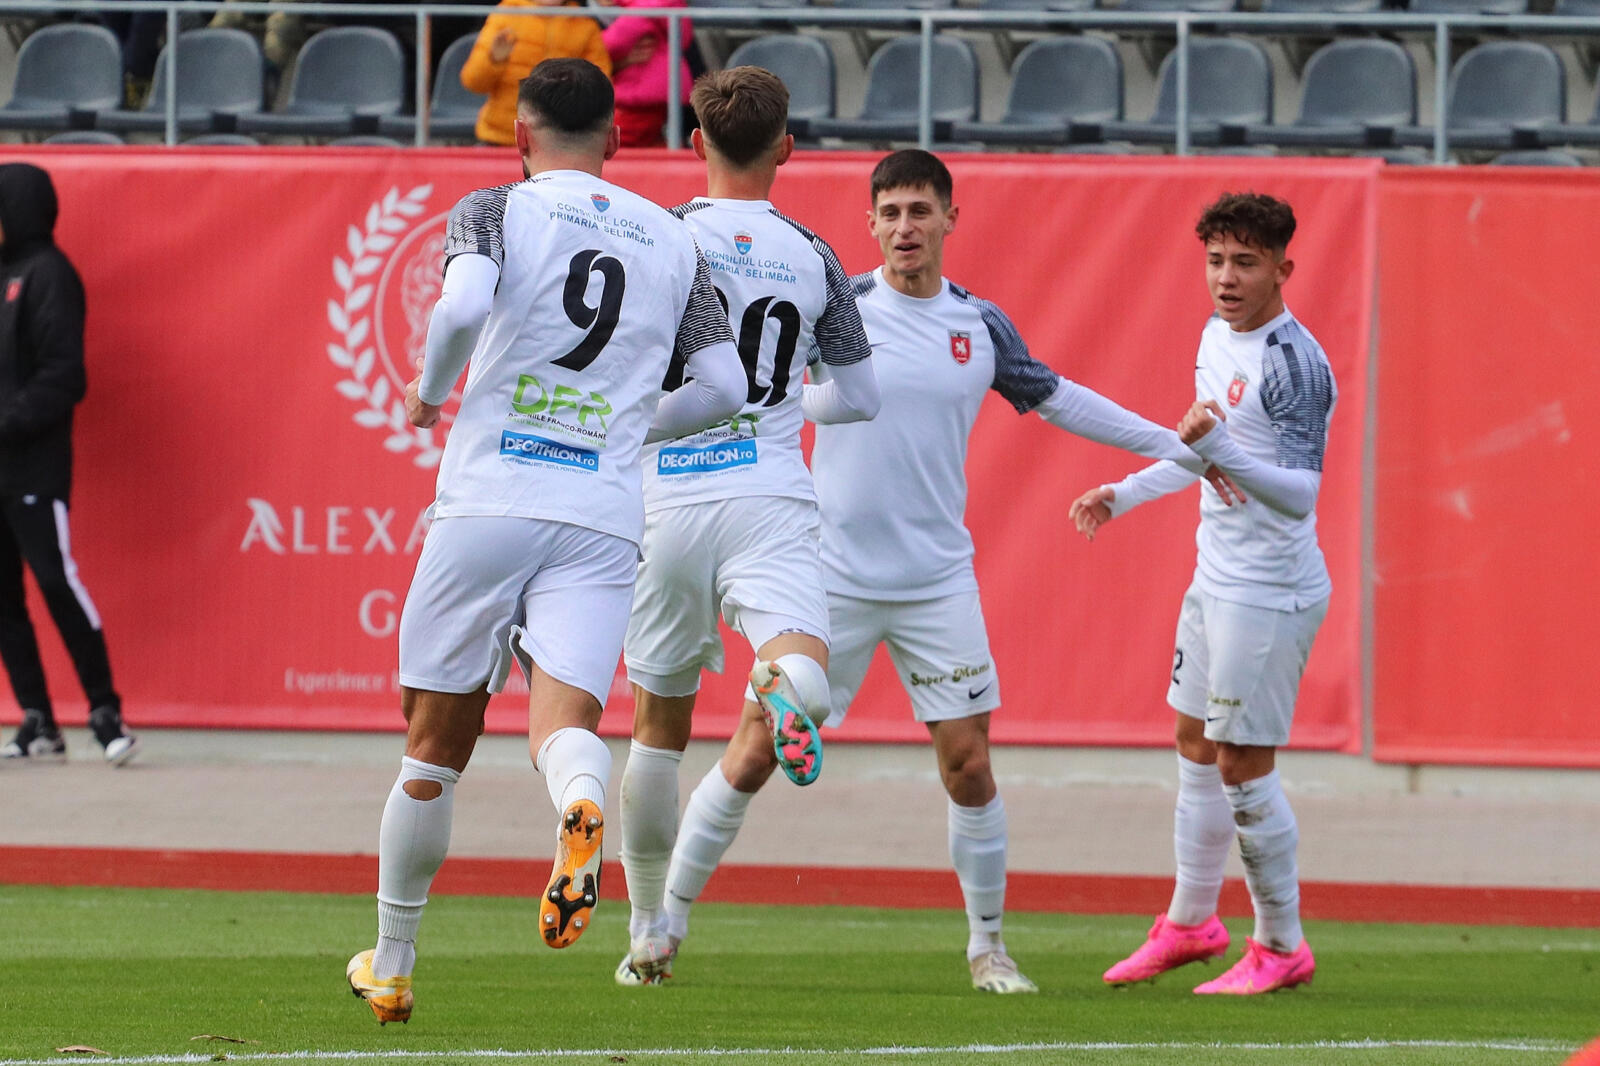 Unirea Slobozia - Steaua București, 2-2 (1-1)